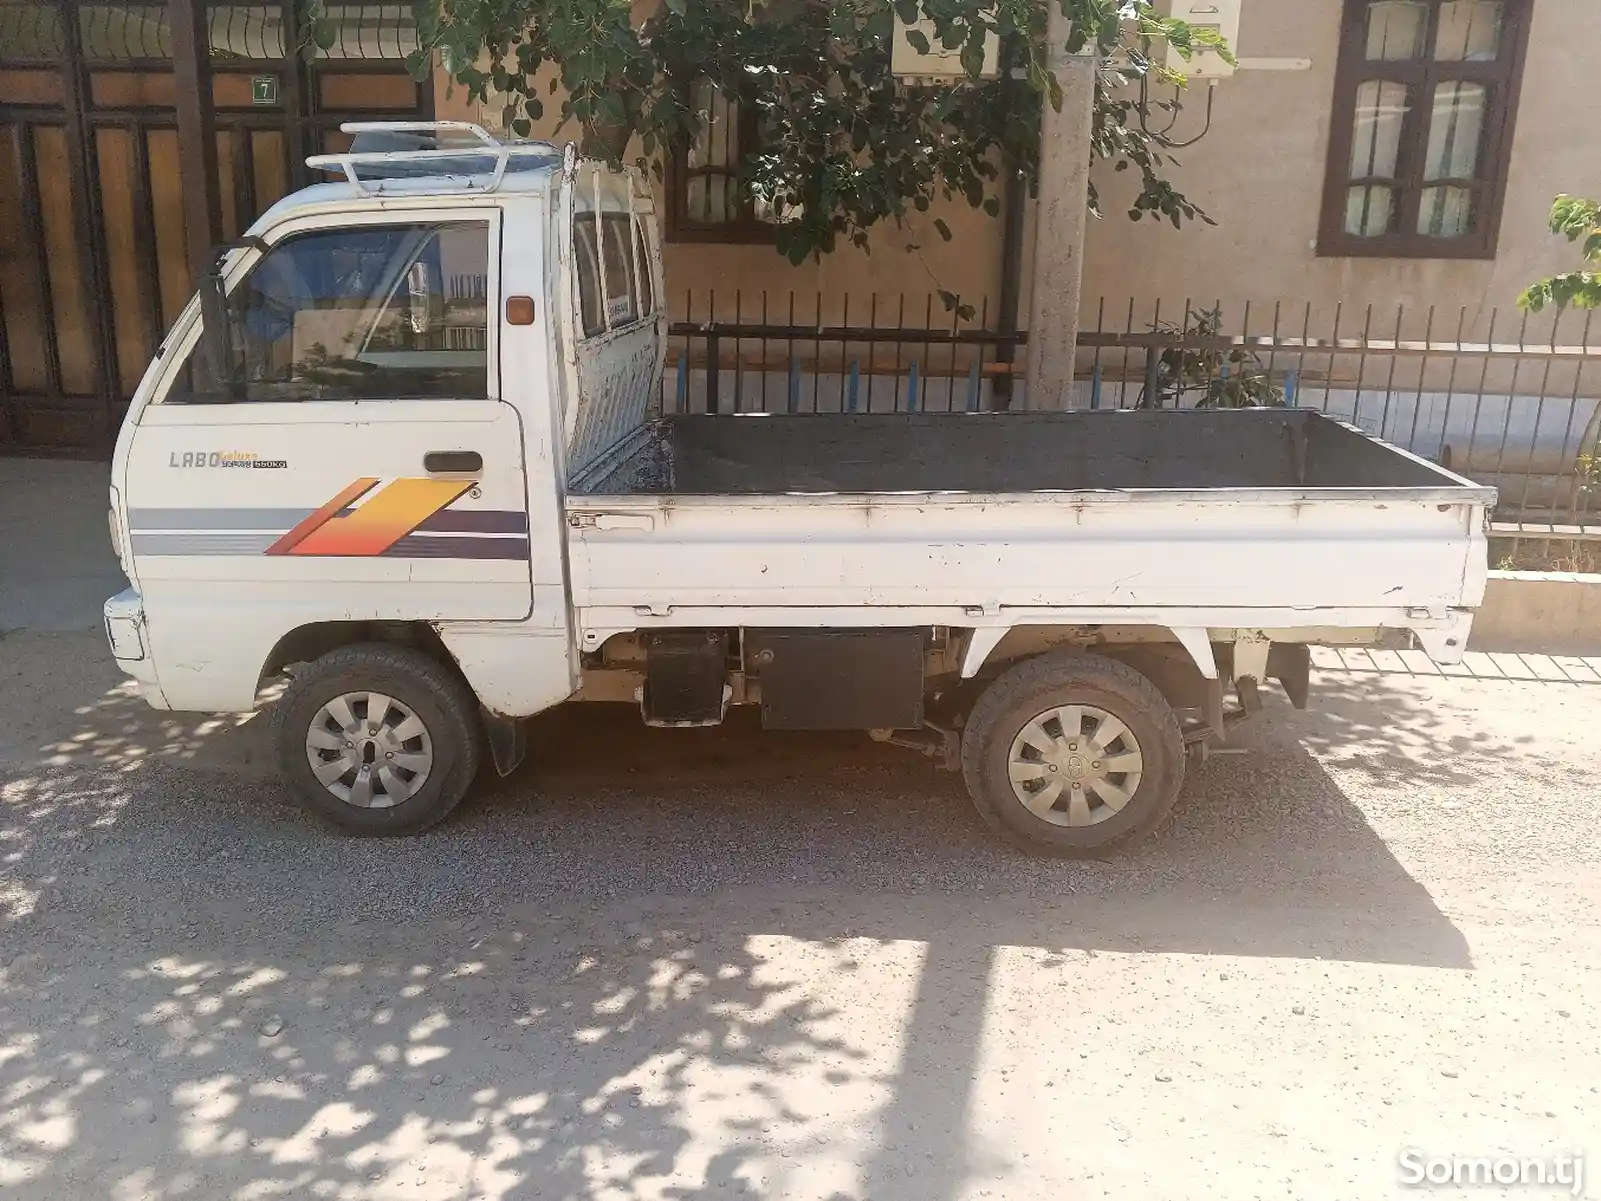 Бортовой автомобиль Daewoo Labo, 1998-4